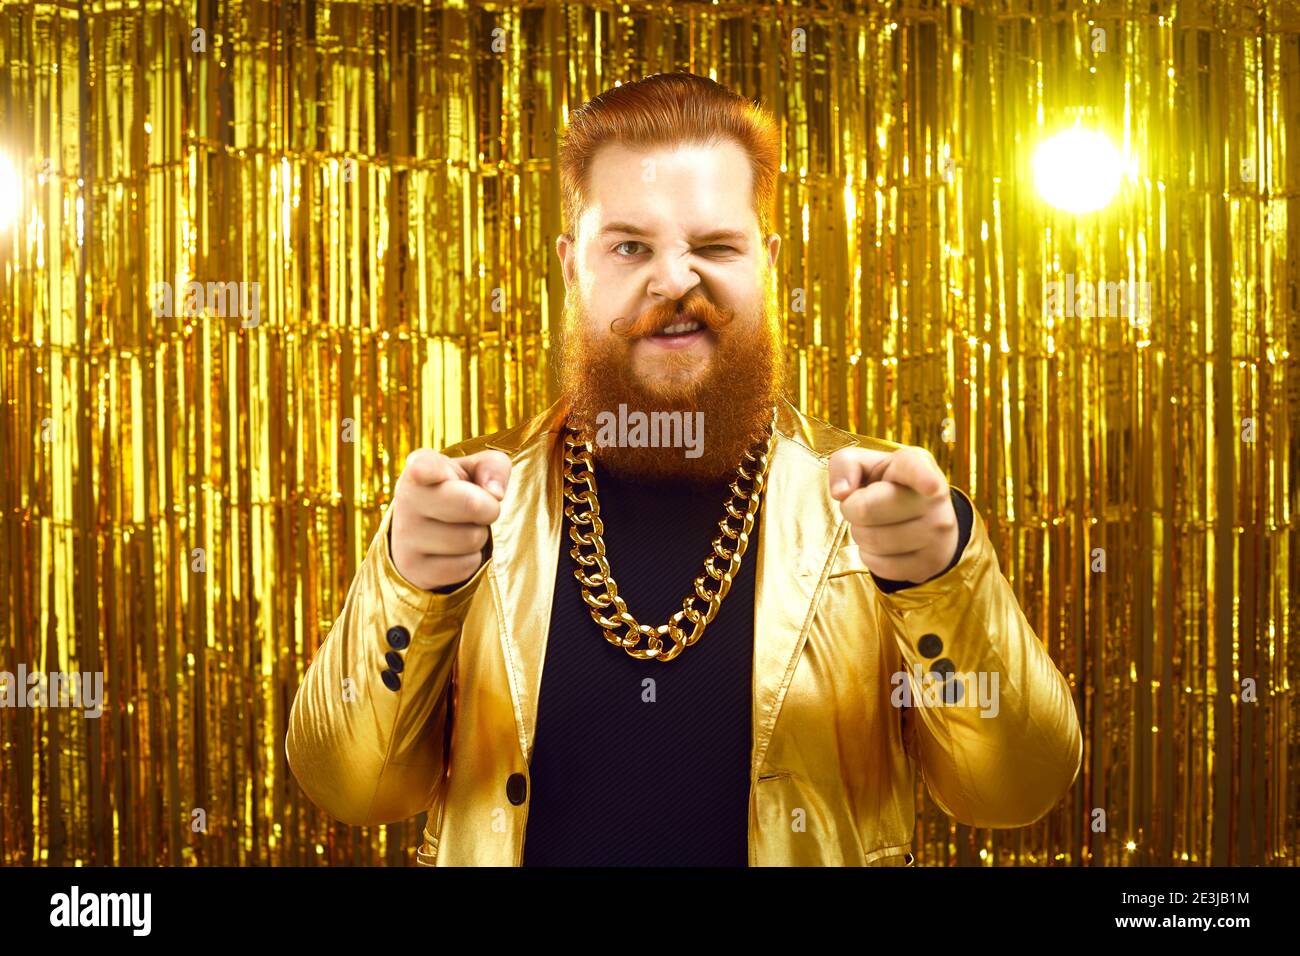 Homme extravagant en blouson doré funky, avec chaîne d'or autour du cou, pointant vers l'appareil photo Banque D'Images